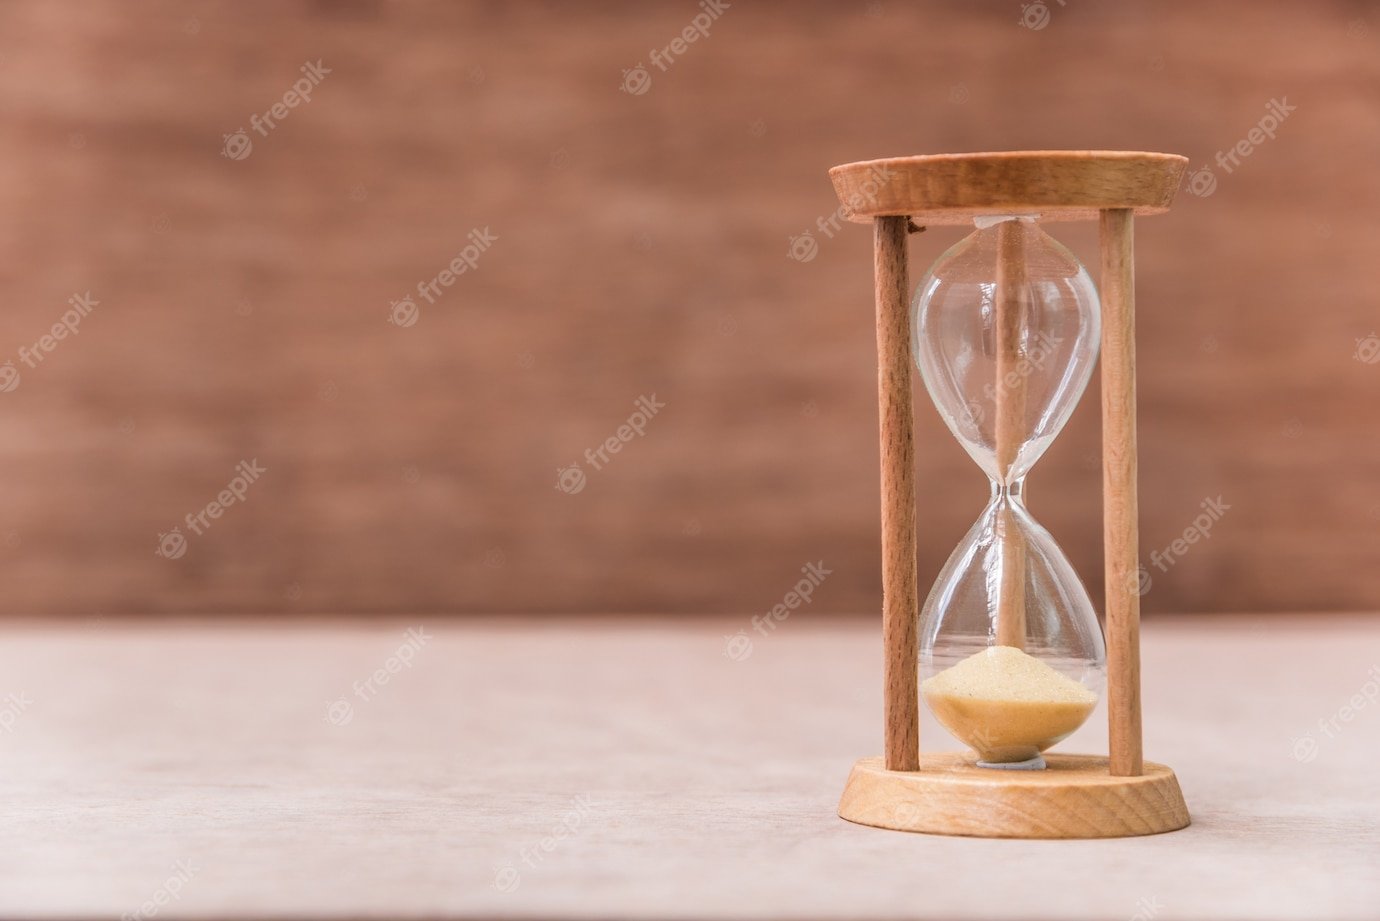 Имеются песочные часы на 3. Песочные часы. Песочные часы в деревянном корпусе. Старинные песочные часы. Песочные часы истекают.